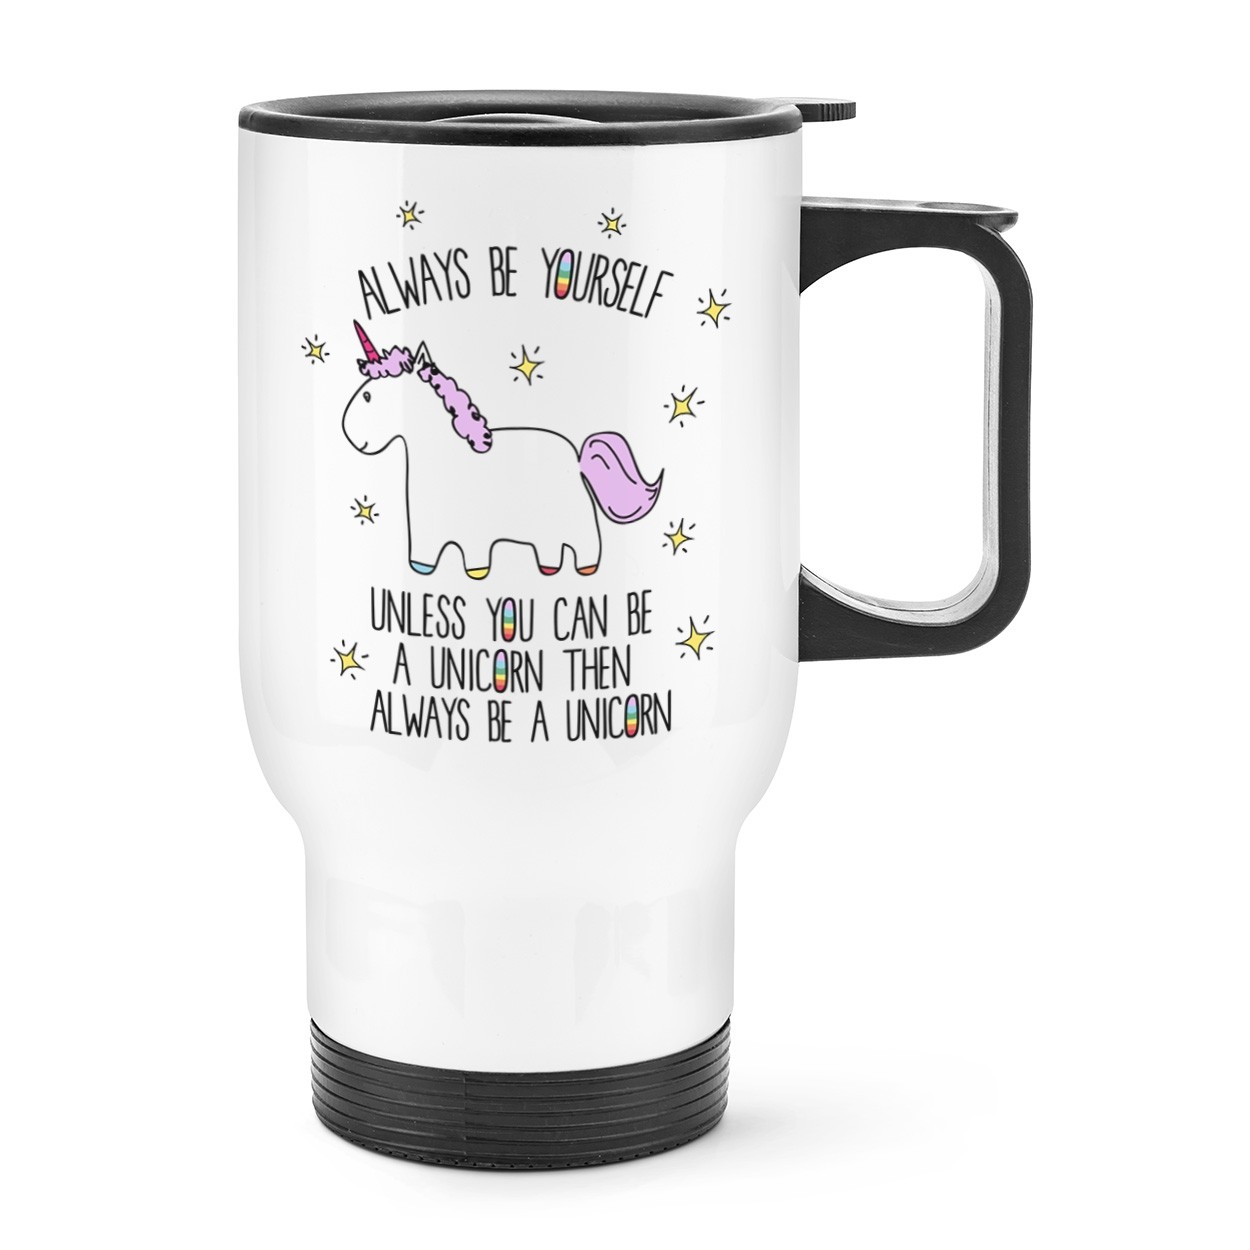 Lila Unicorn Always Be Yourself Handled Travel Mug Cup